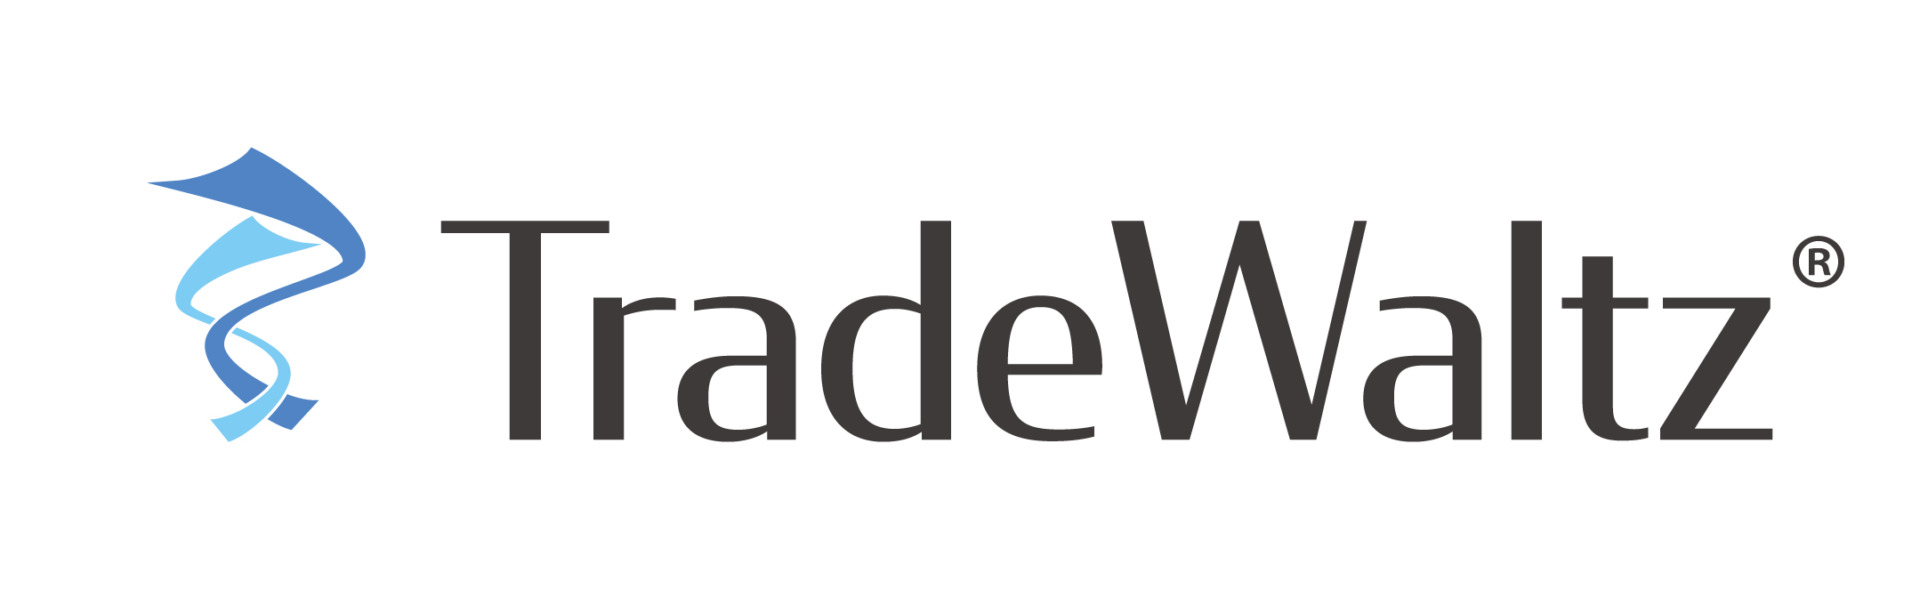 APECビジネス諮問委員会_デジタル貿易委員会でトレードワルツが発表を致しました